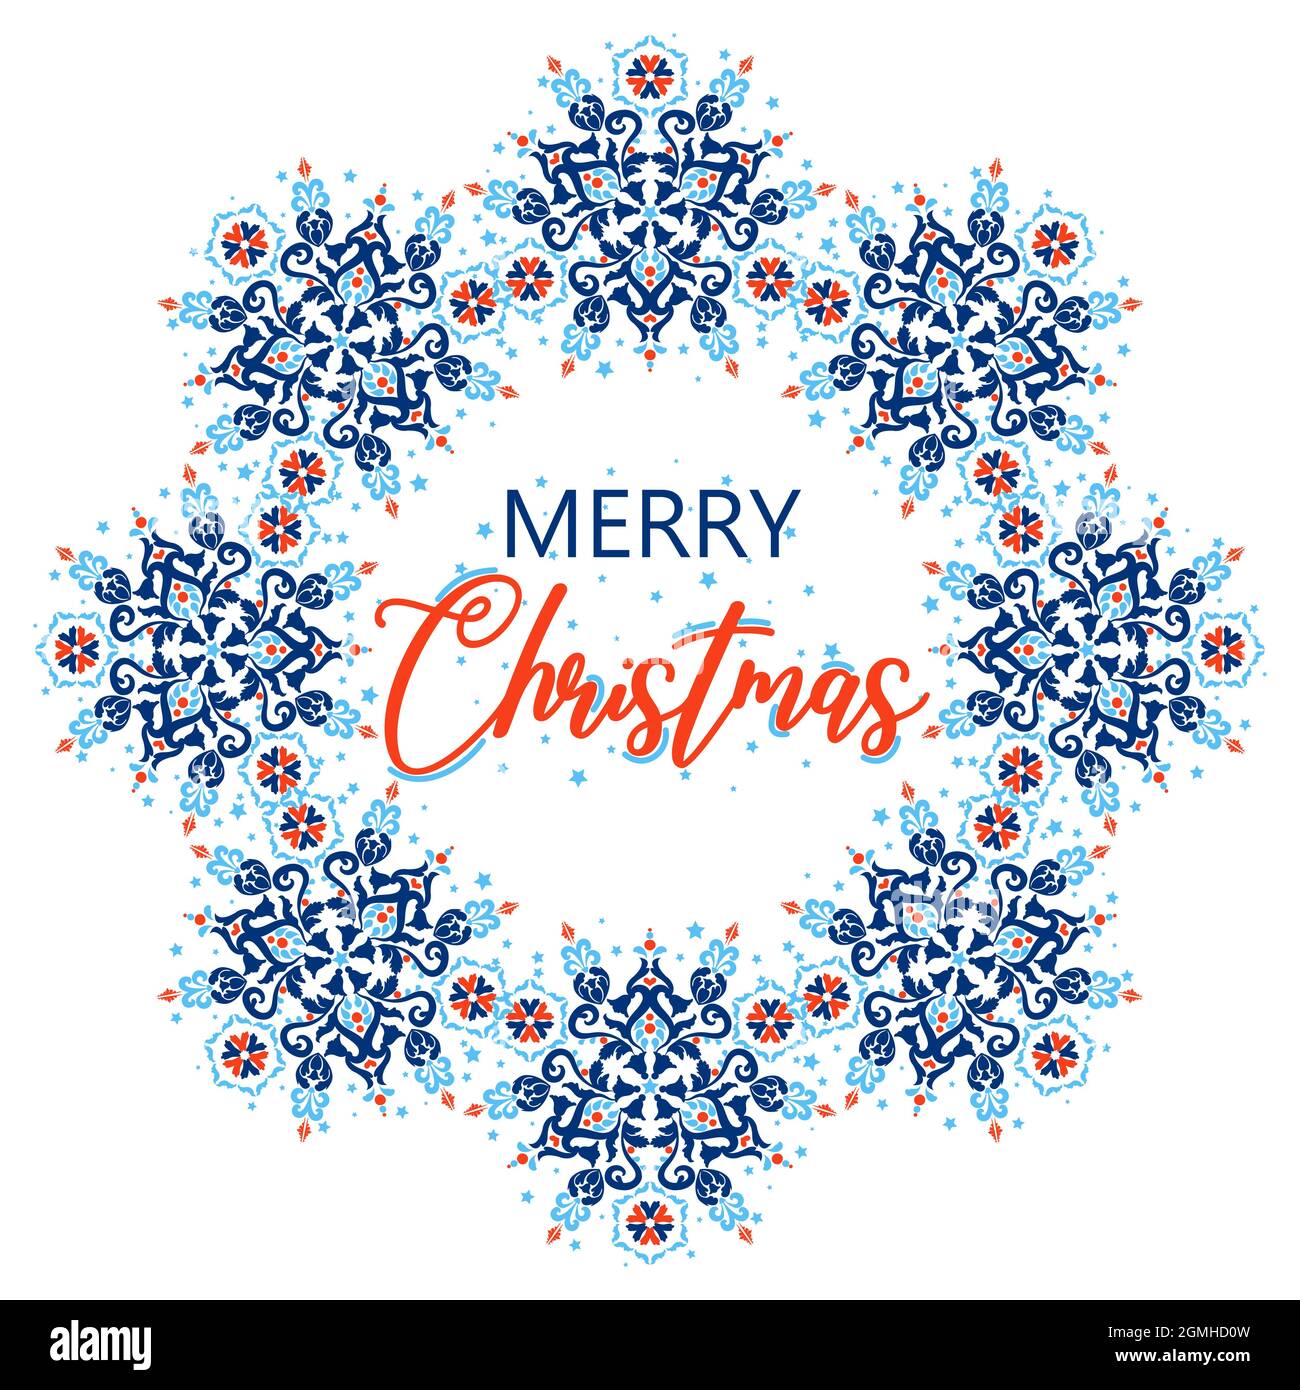 Geschenkkarte Frohe Weihnachten Jahreszeit Grüße Hintergrund. Blau, rot und weiß. Grußkarten-Textvorlage. Schöne Flyer-Vorlage mit weihnachten für Stock Vektor